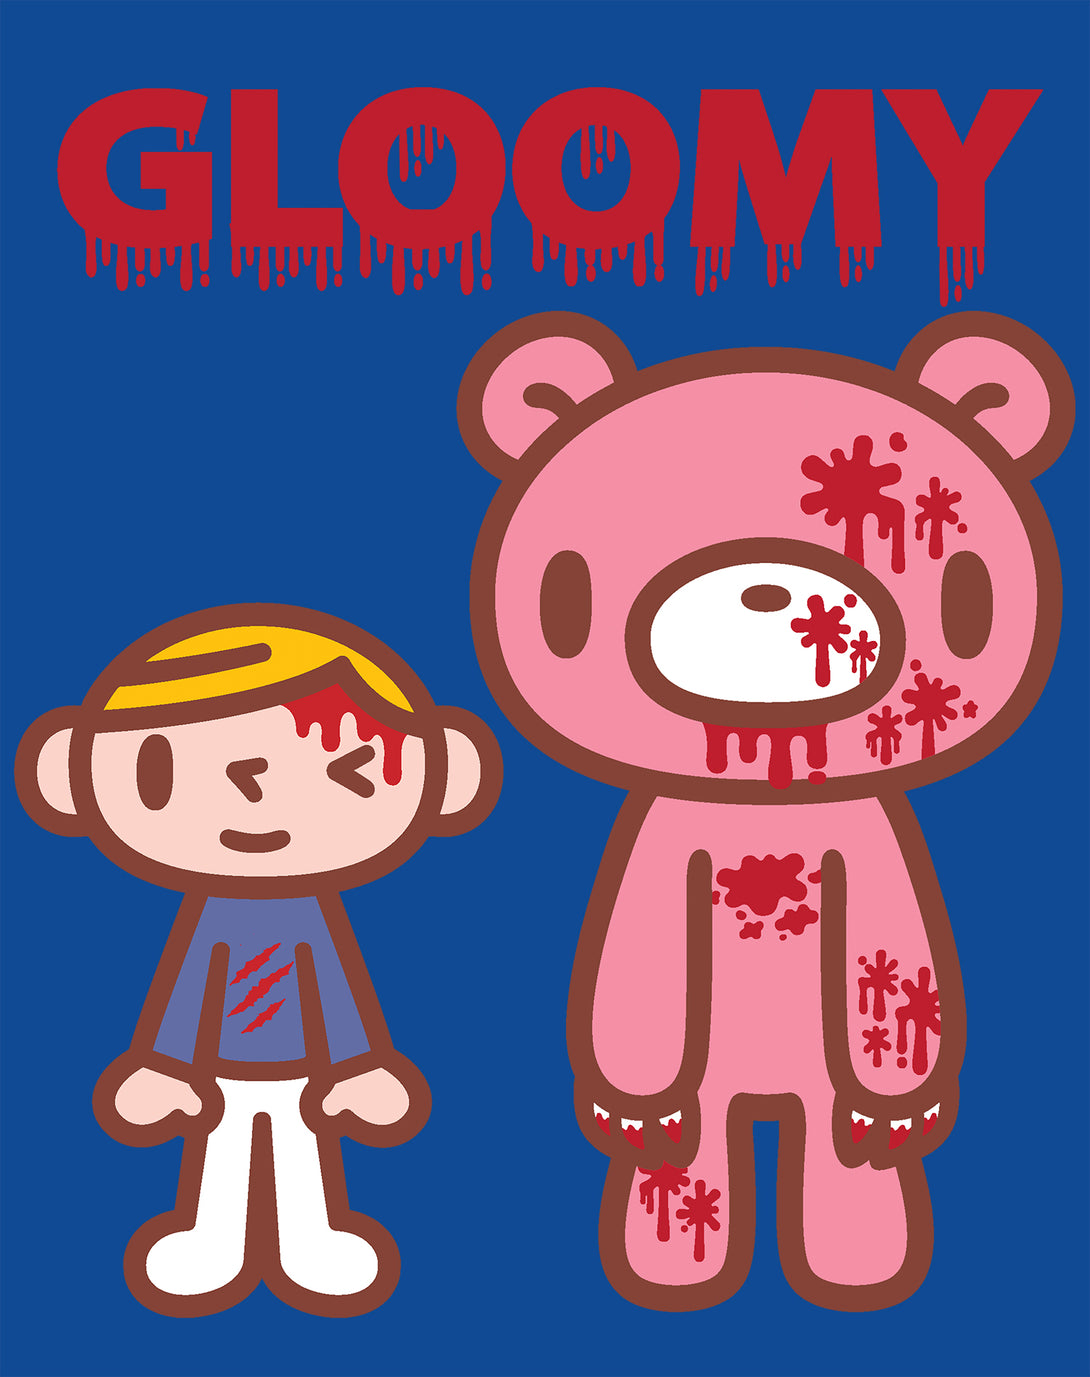 Gloomy Bear Blood Splatter Official Men's T-shirt Blue - Urban Species Design Close Up